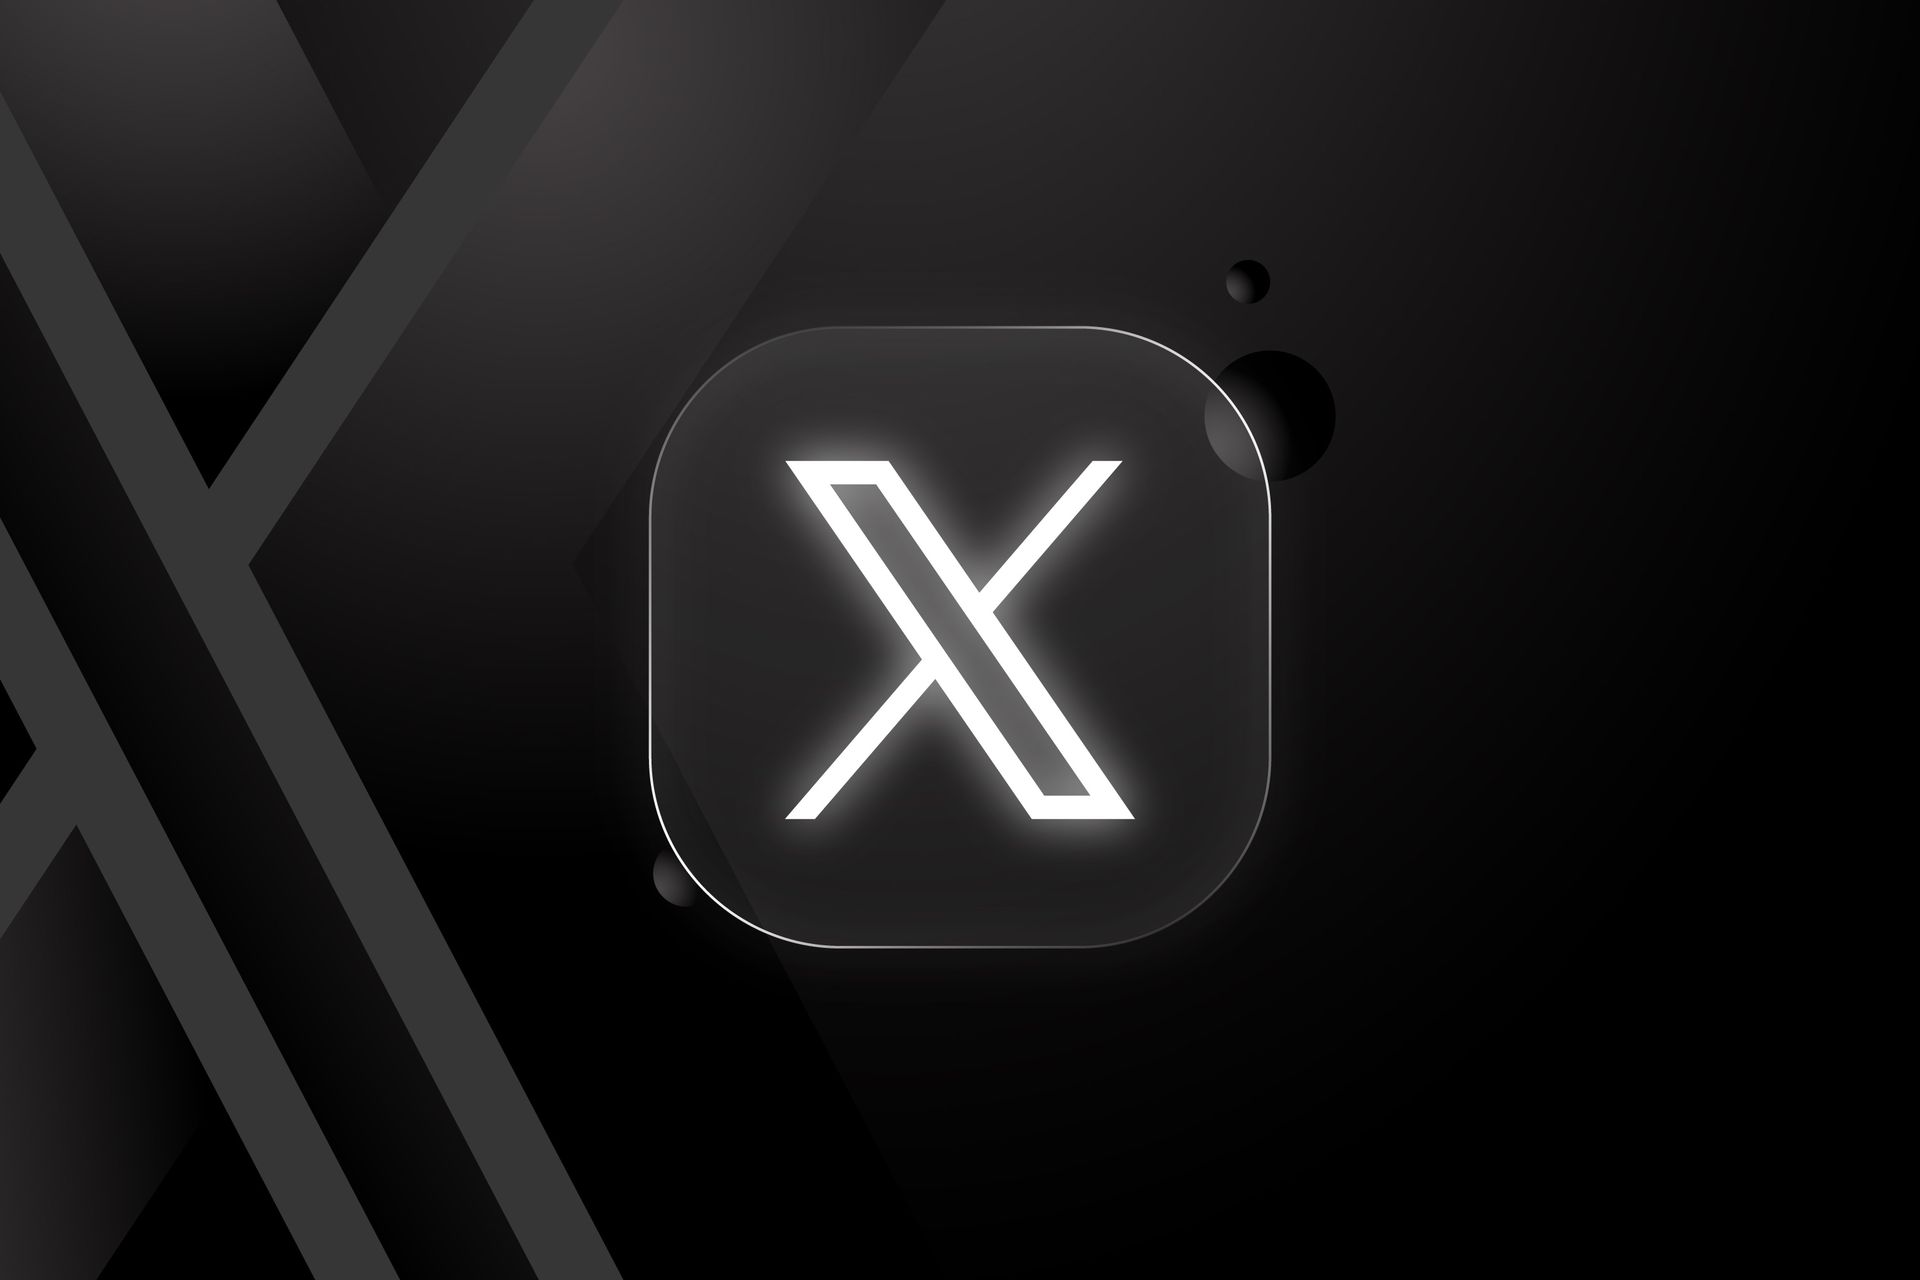 X tüm kullanıcılar için ücretli olabilir